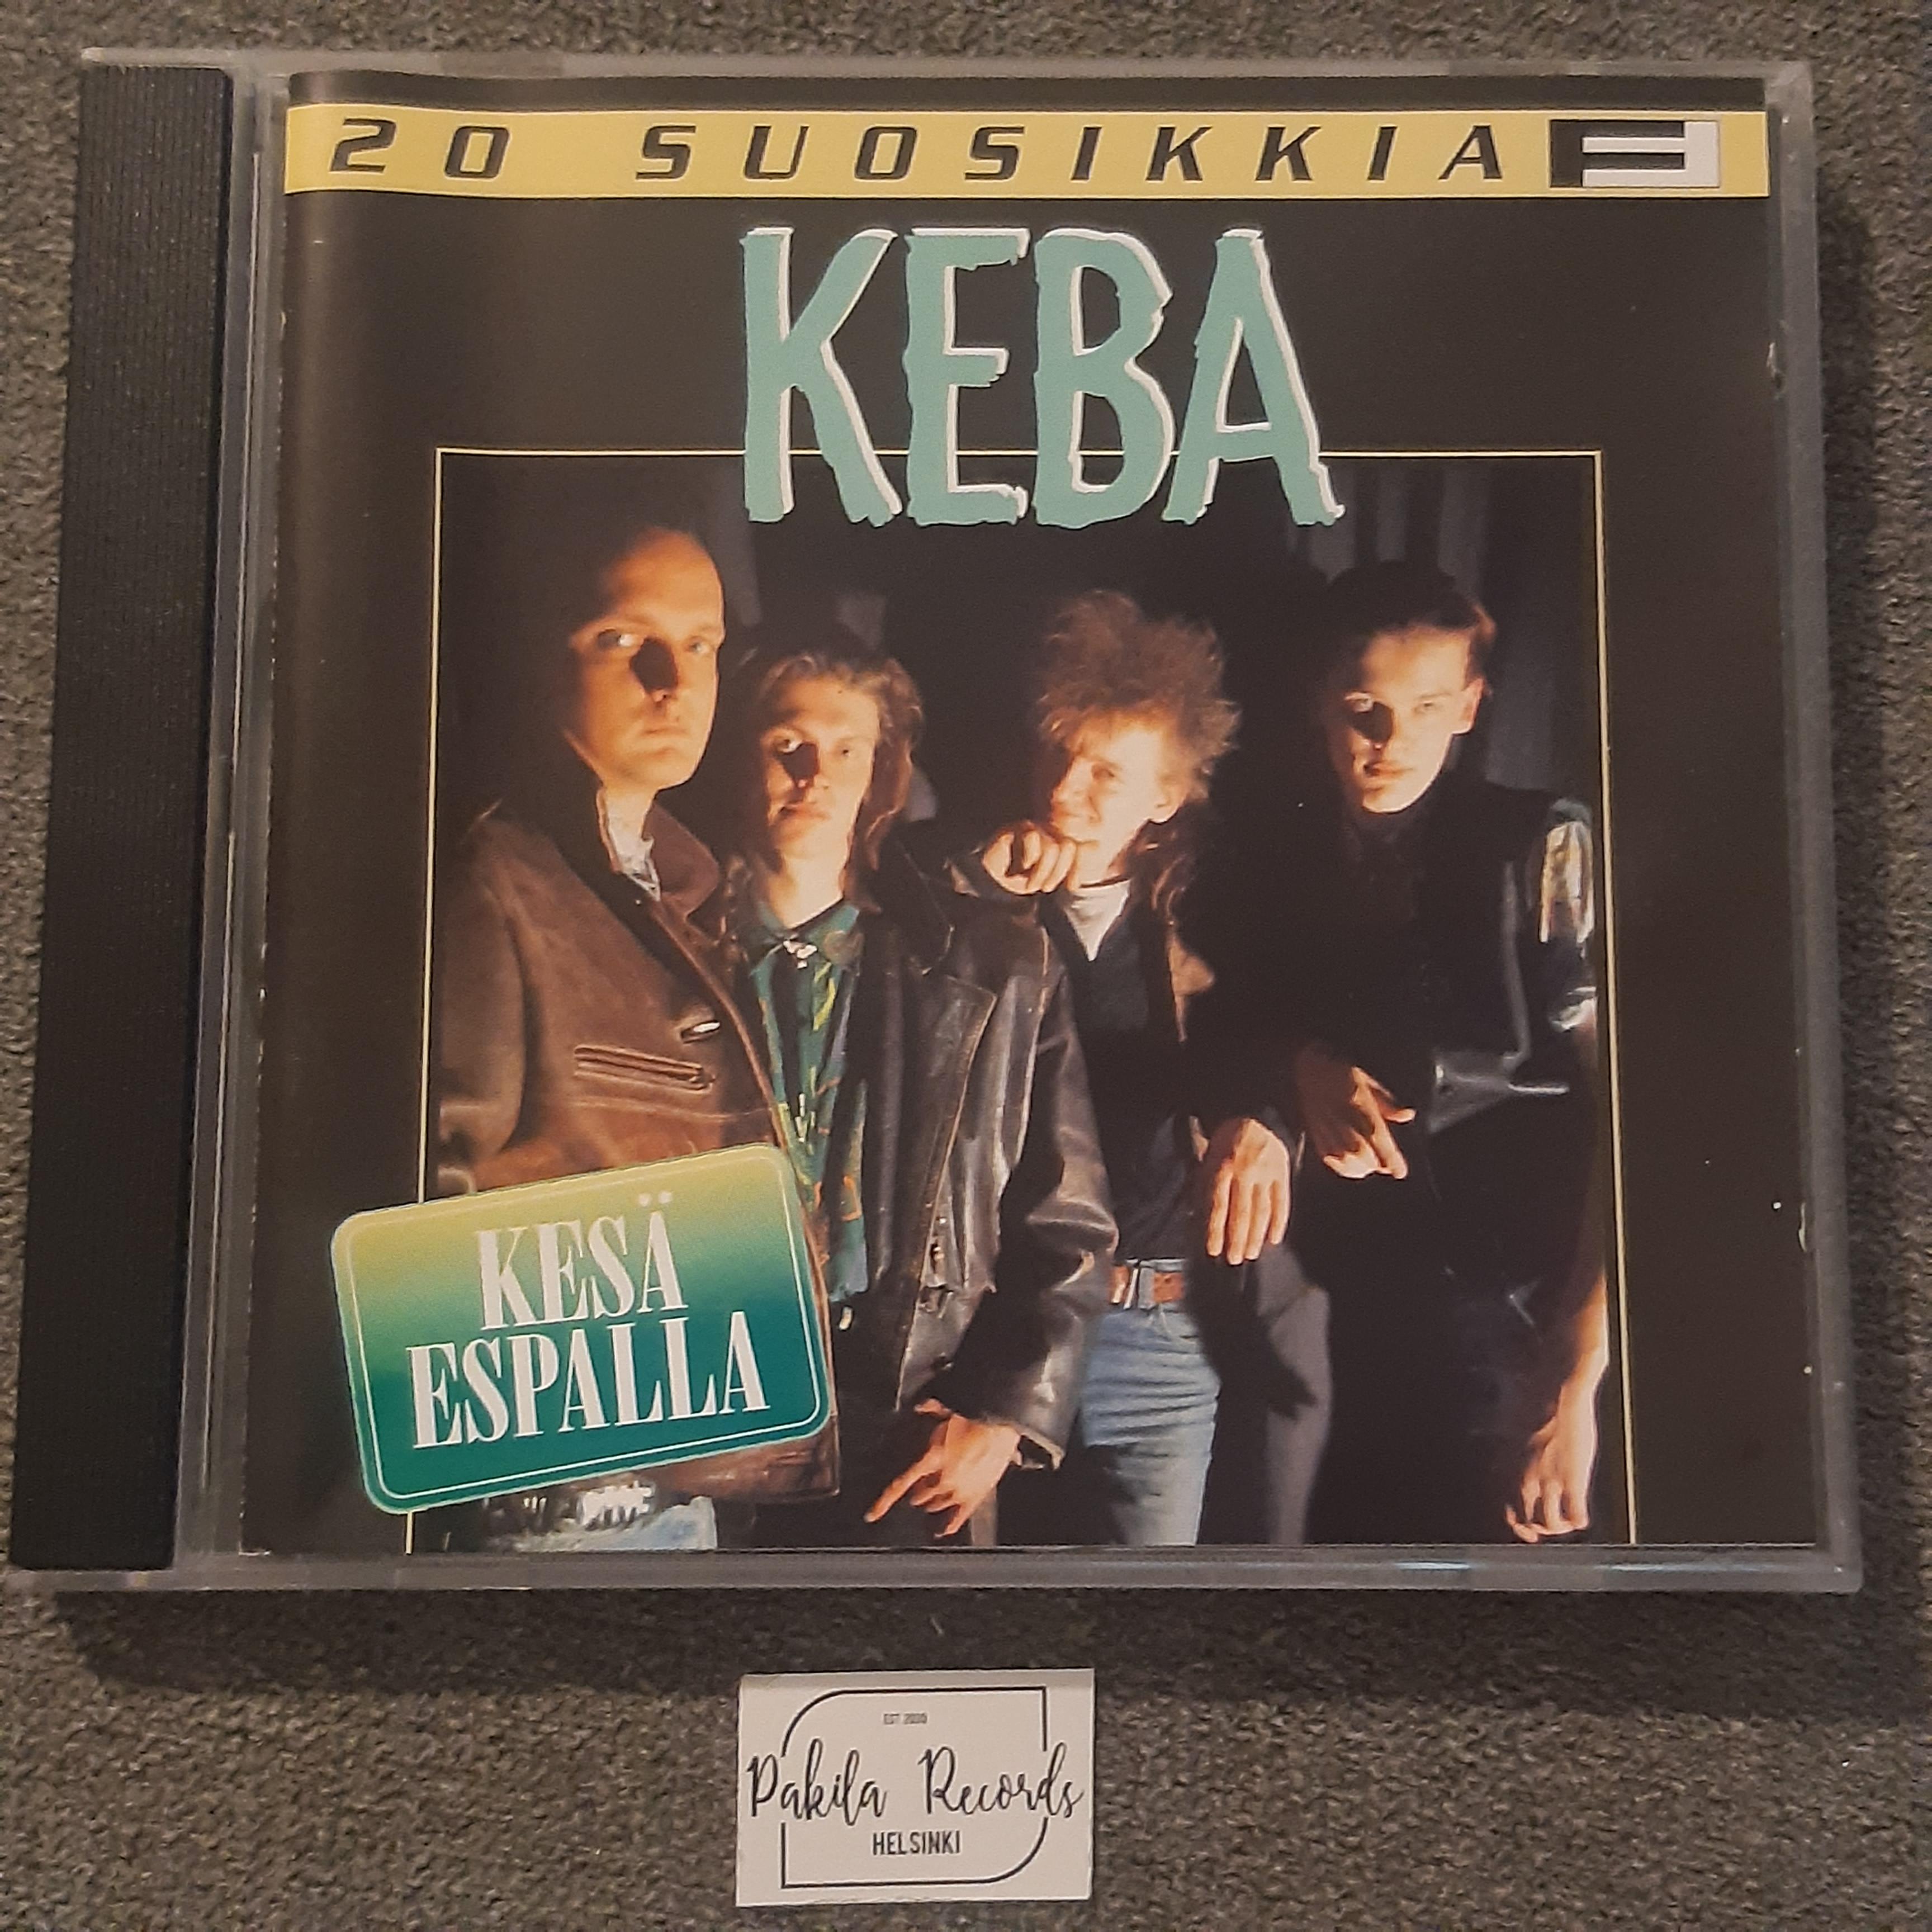 Keba - 20 suosikkia, Kesä Espalla - CD (käytetty)